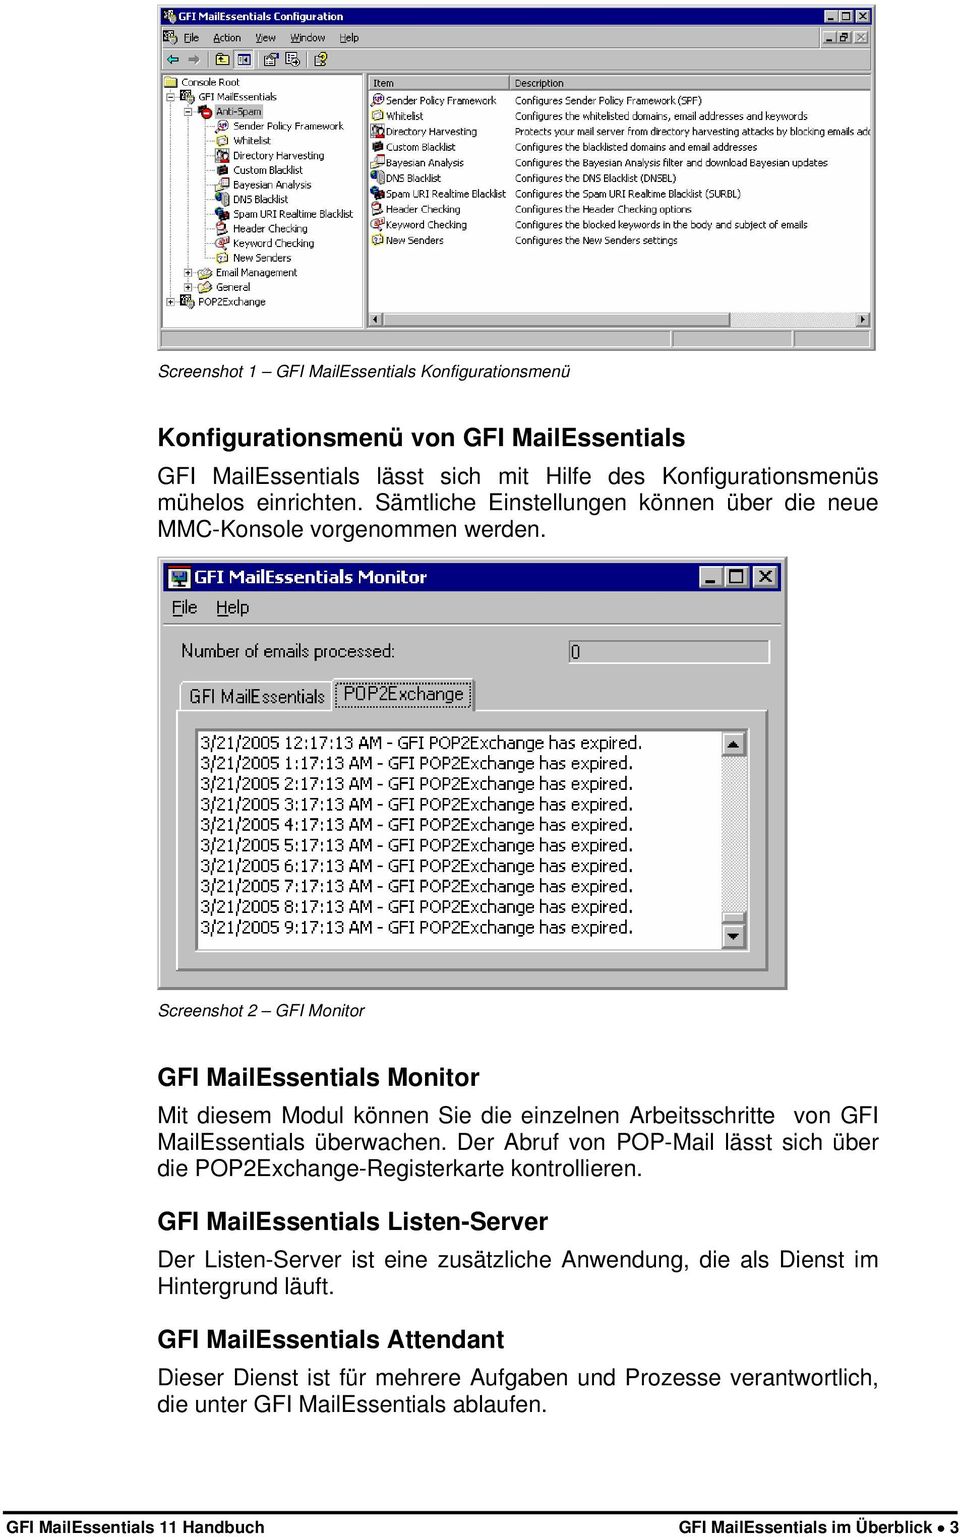 Screenshot 2 GFI Monitor GFI MailEssentials Monitor Mit diesem Modul können Sie die einzelnen Arbeitsschritte von GFI MailEssentials überwachen.